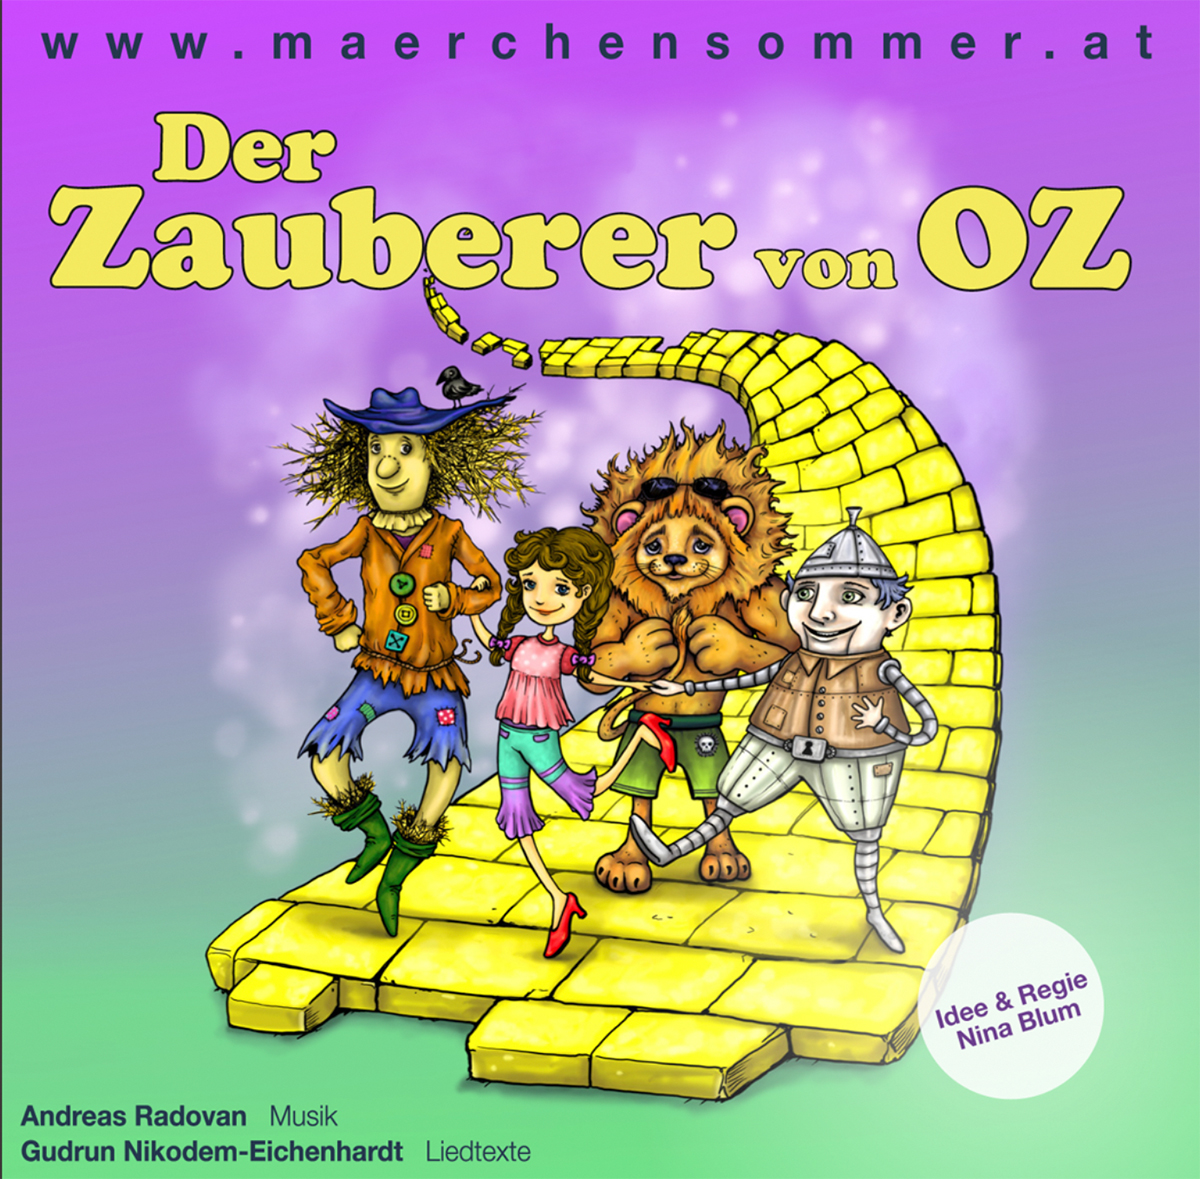 Der Zauberer von Oz CD Download